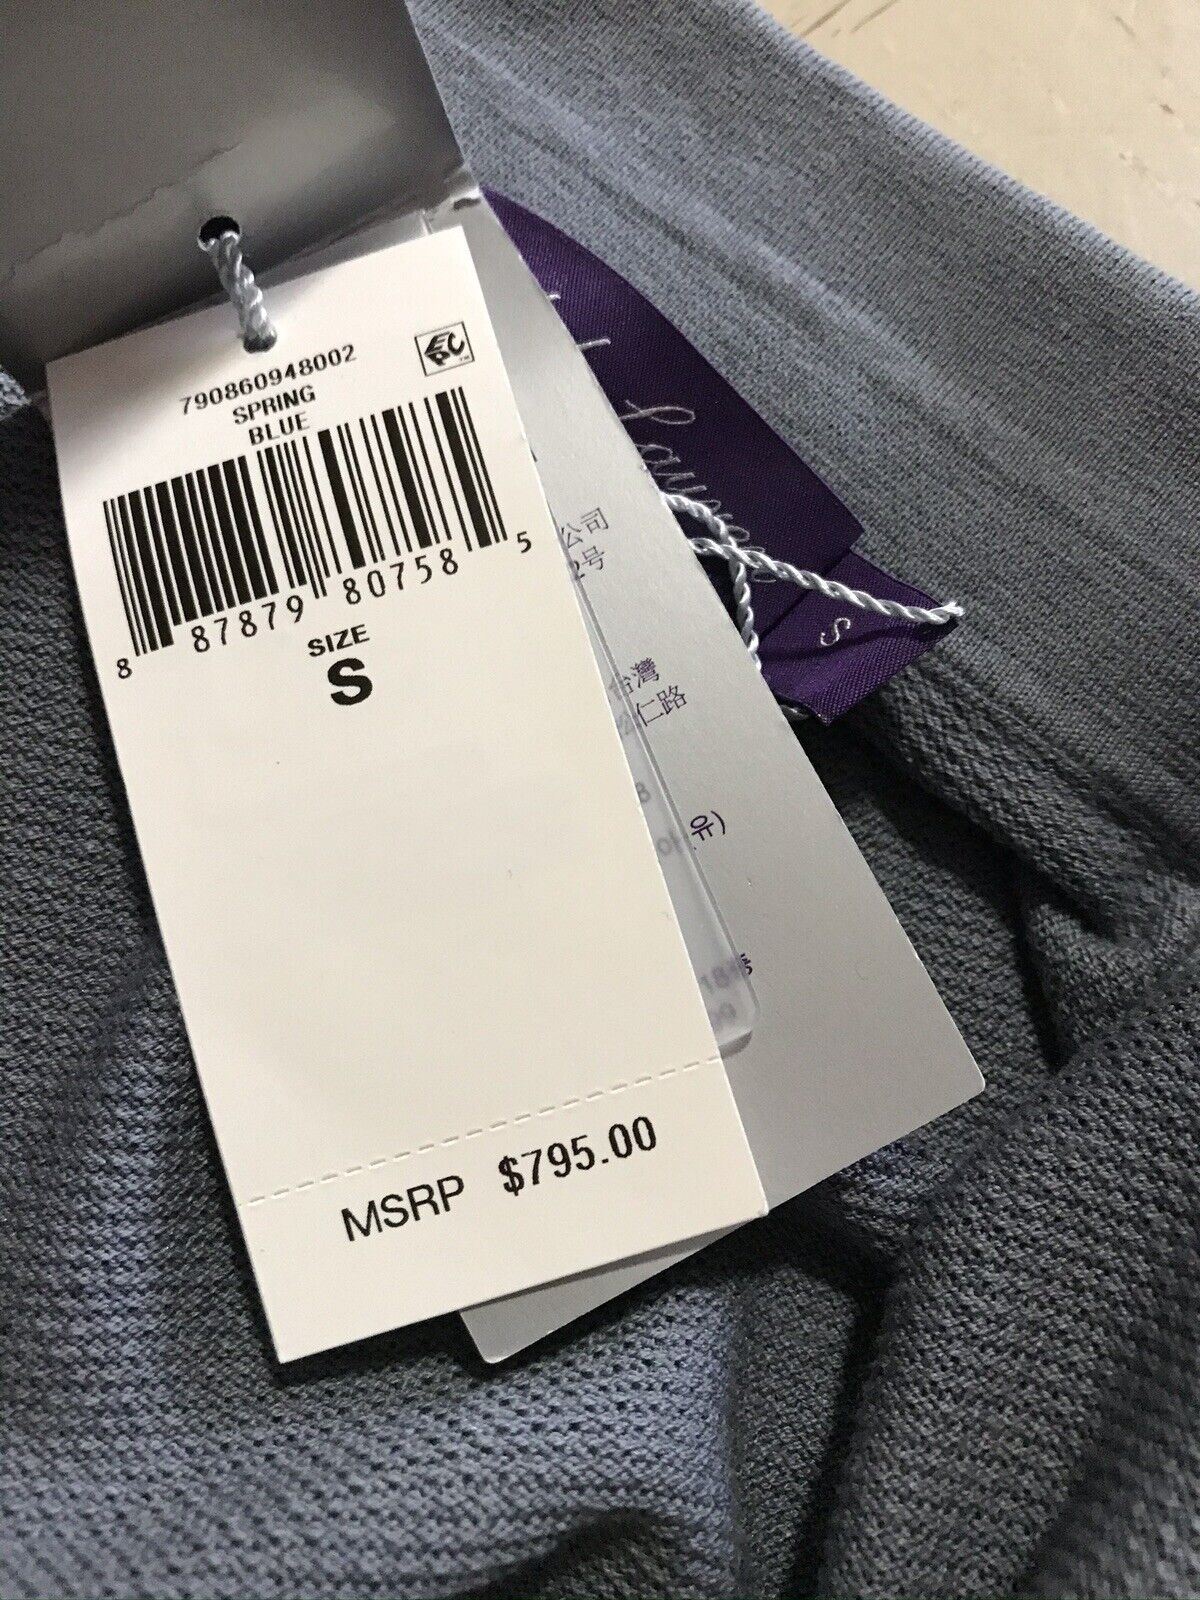 Neu mit Etikett: 795 $ Ralph Lauren Purple Label Herrenhemd aus Seide/Baumwolle DK Grau S Italien